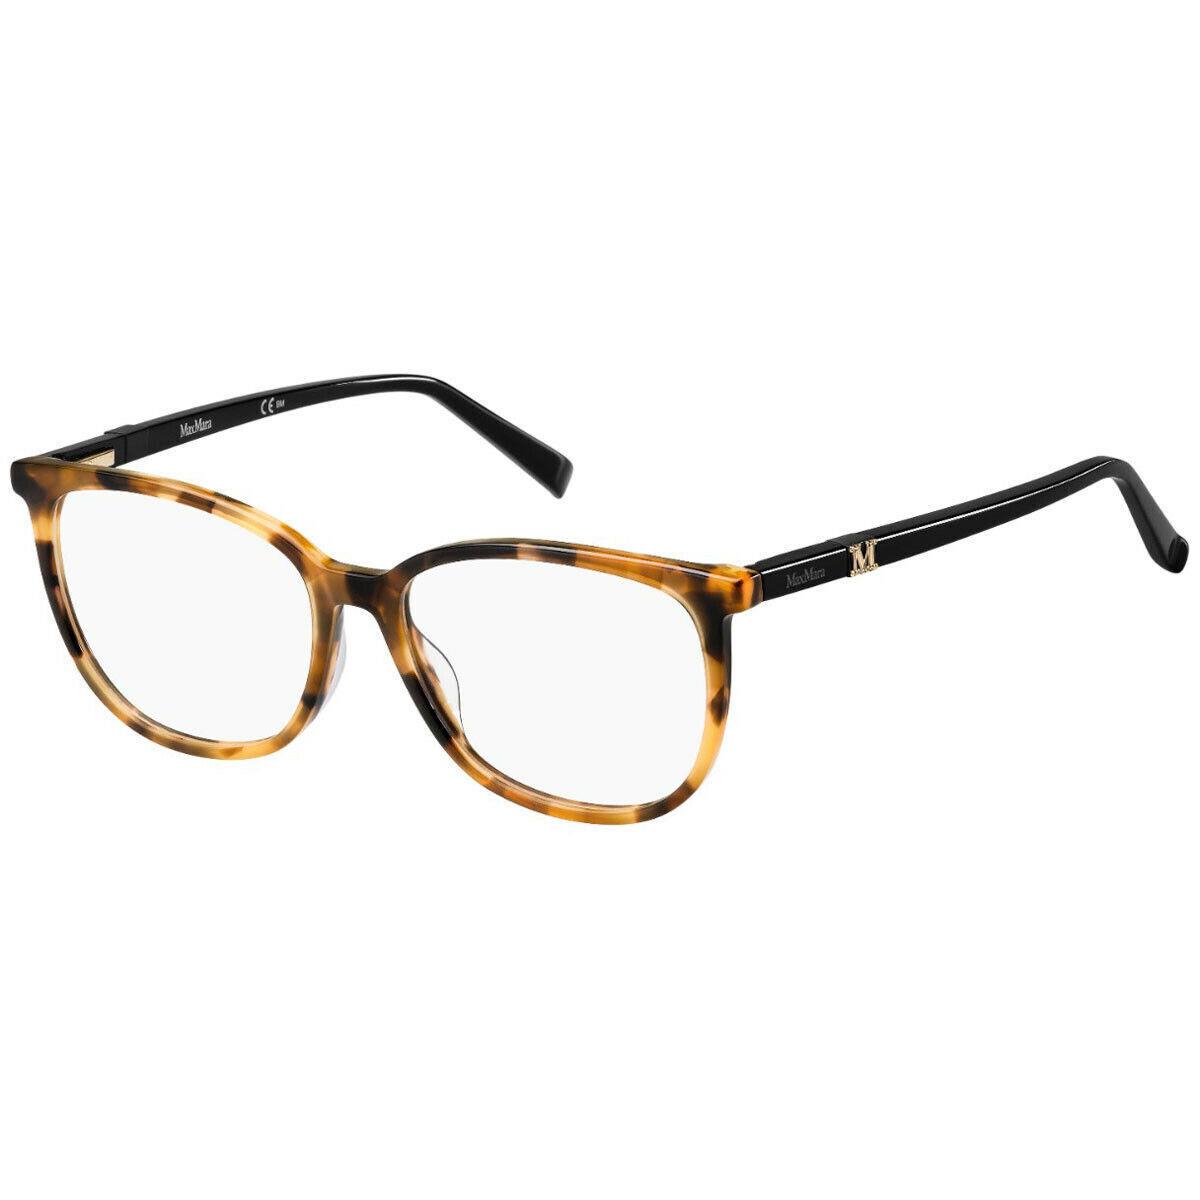 Max Mara Eyeglasses - MM1412 WR9 - Brown Havana 53-16-145